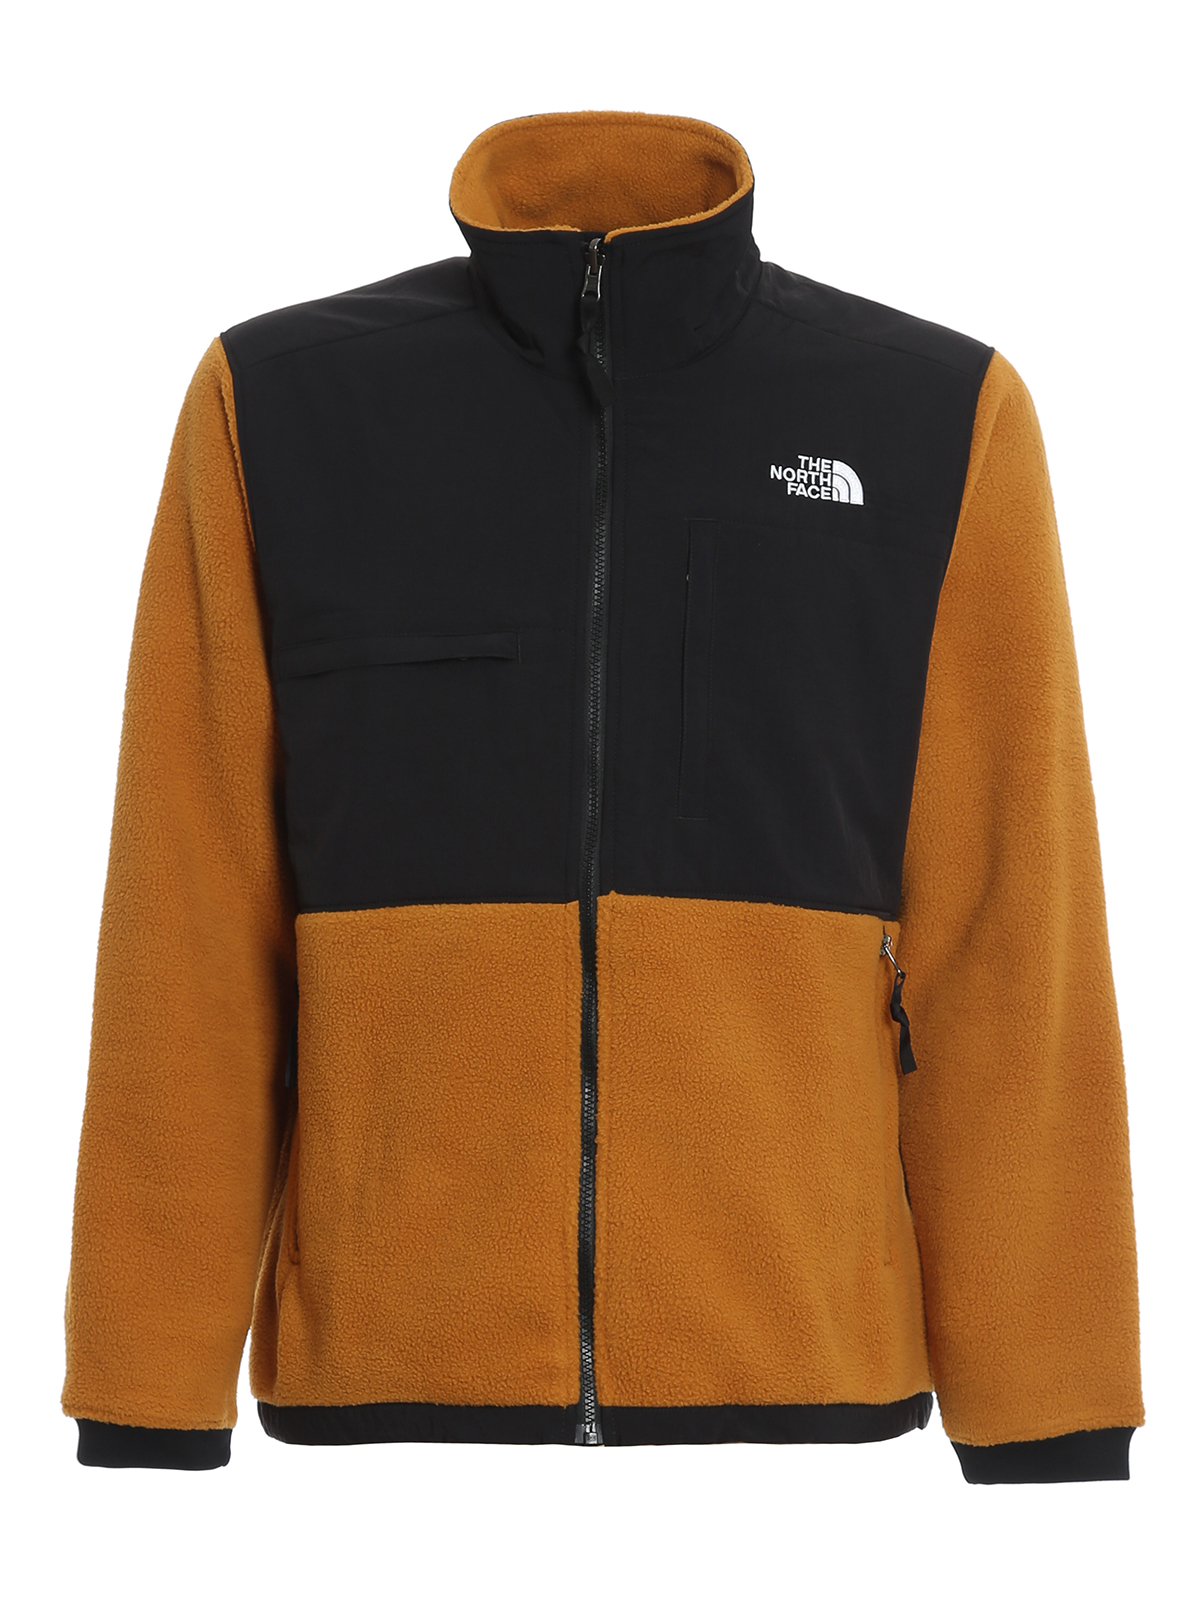 The North Face - Denali 2 jacket 